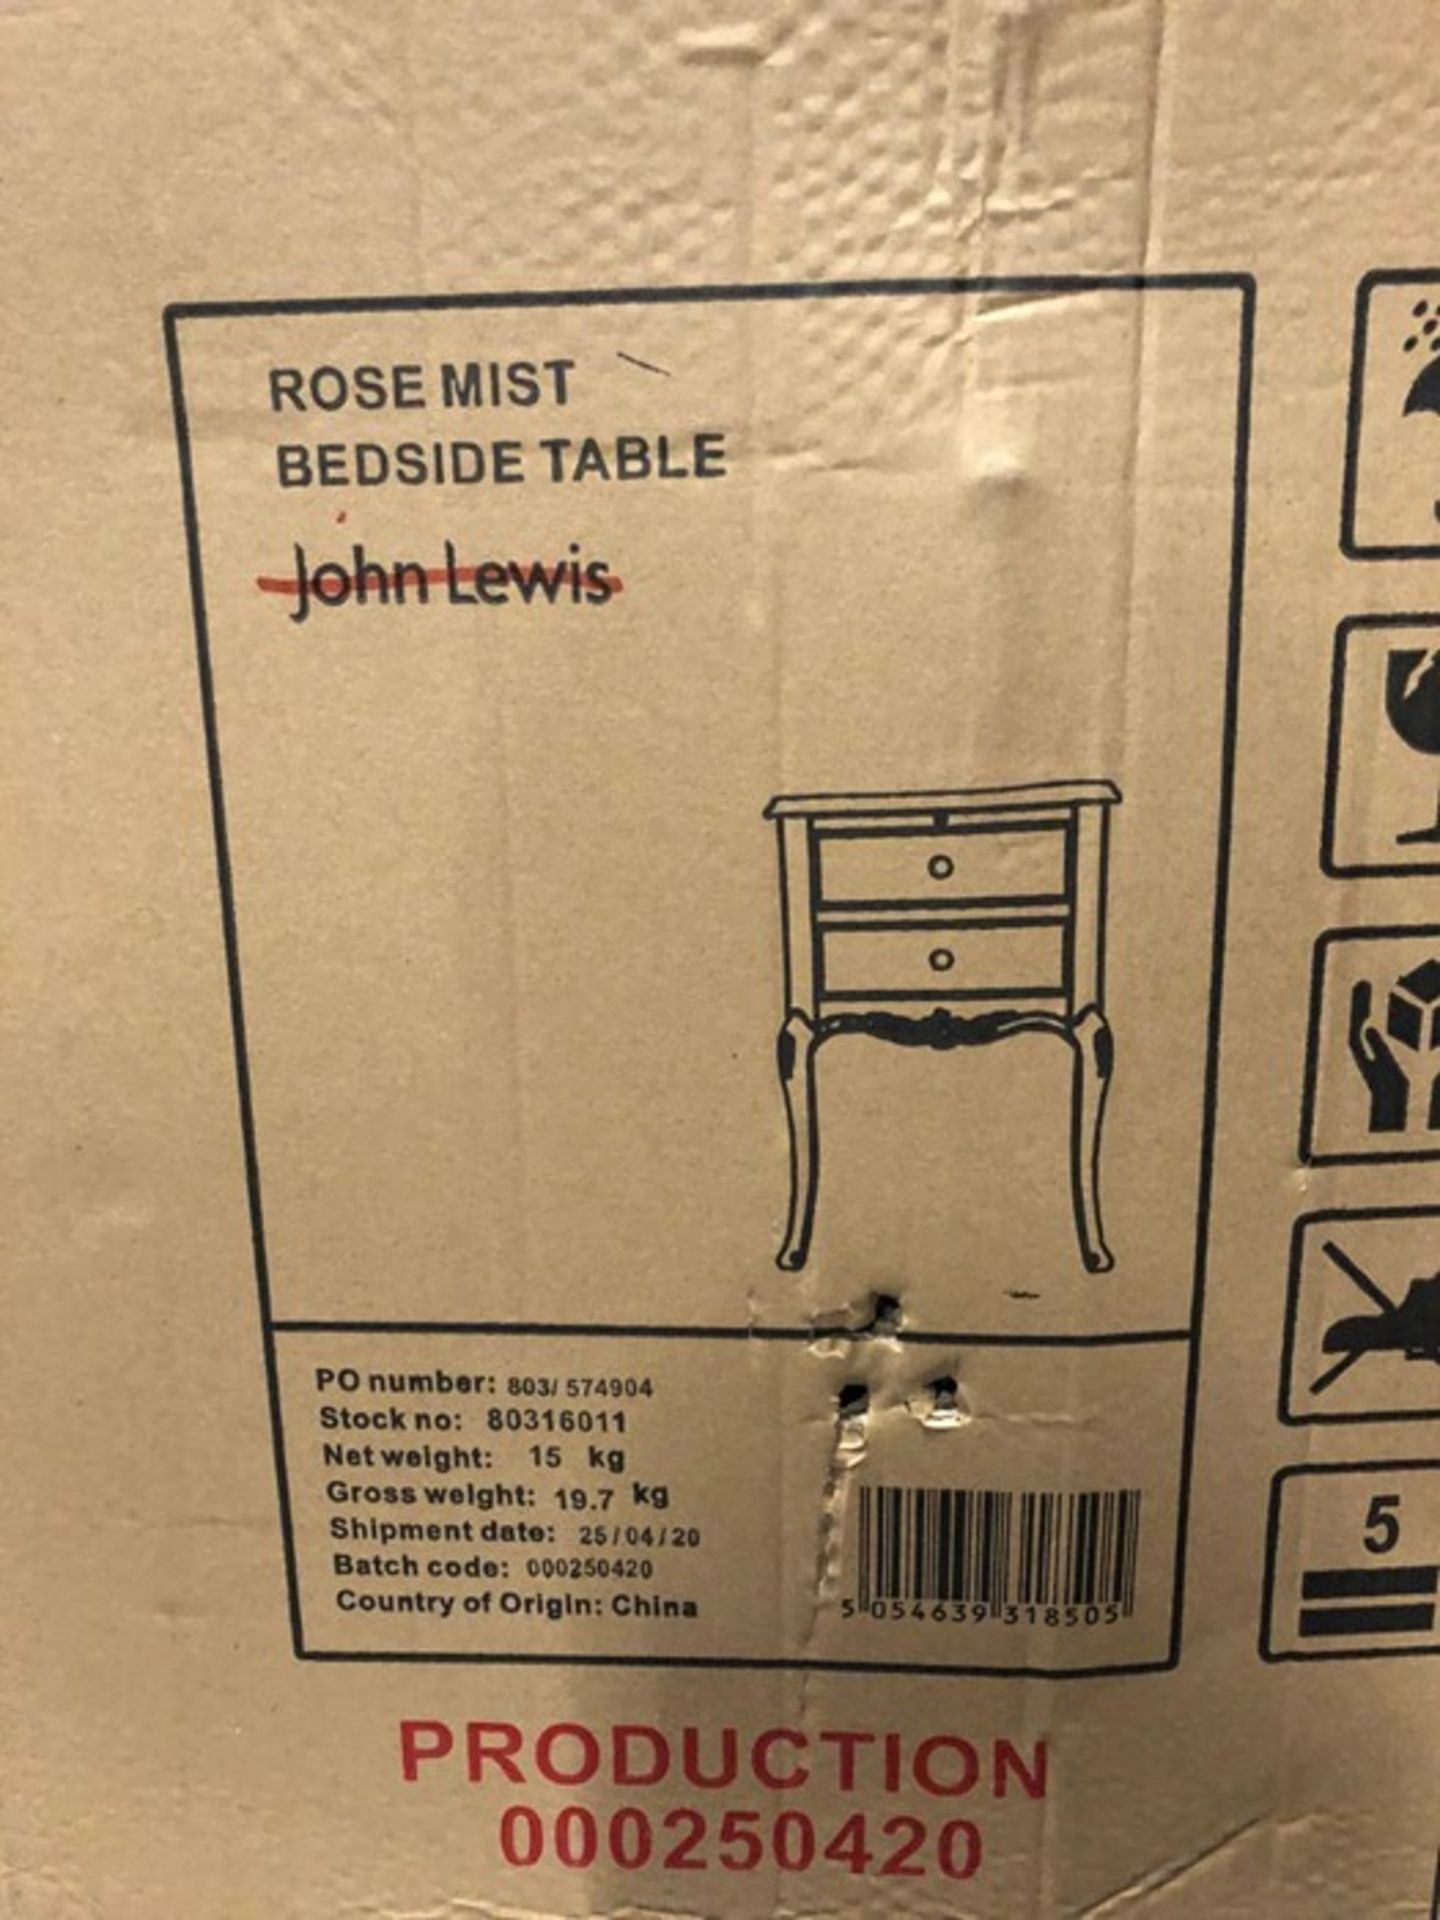 JOHN LEWIS ROSE MIST BEDSIDE TABLE - Image 2 of 3